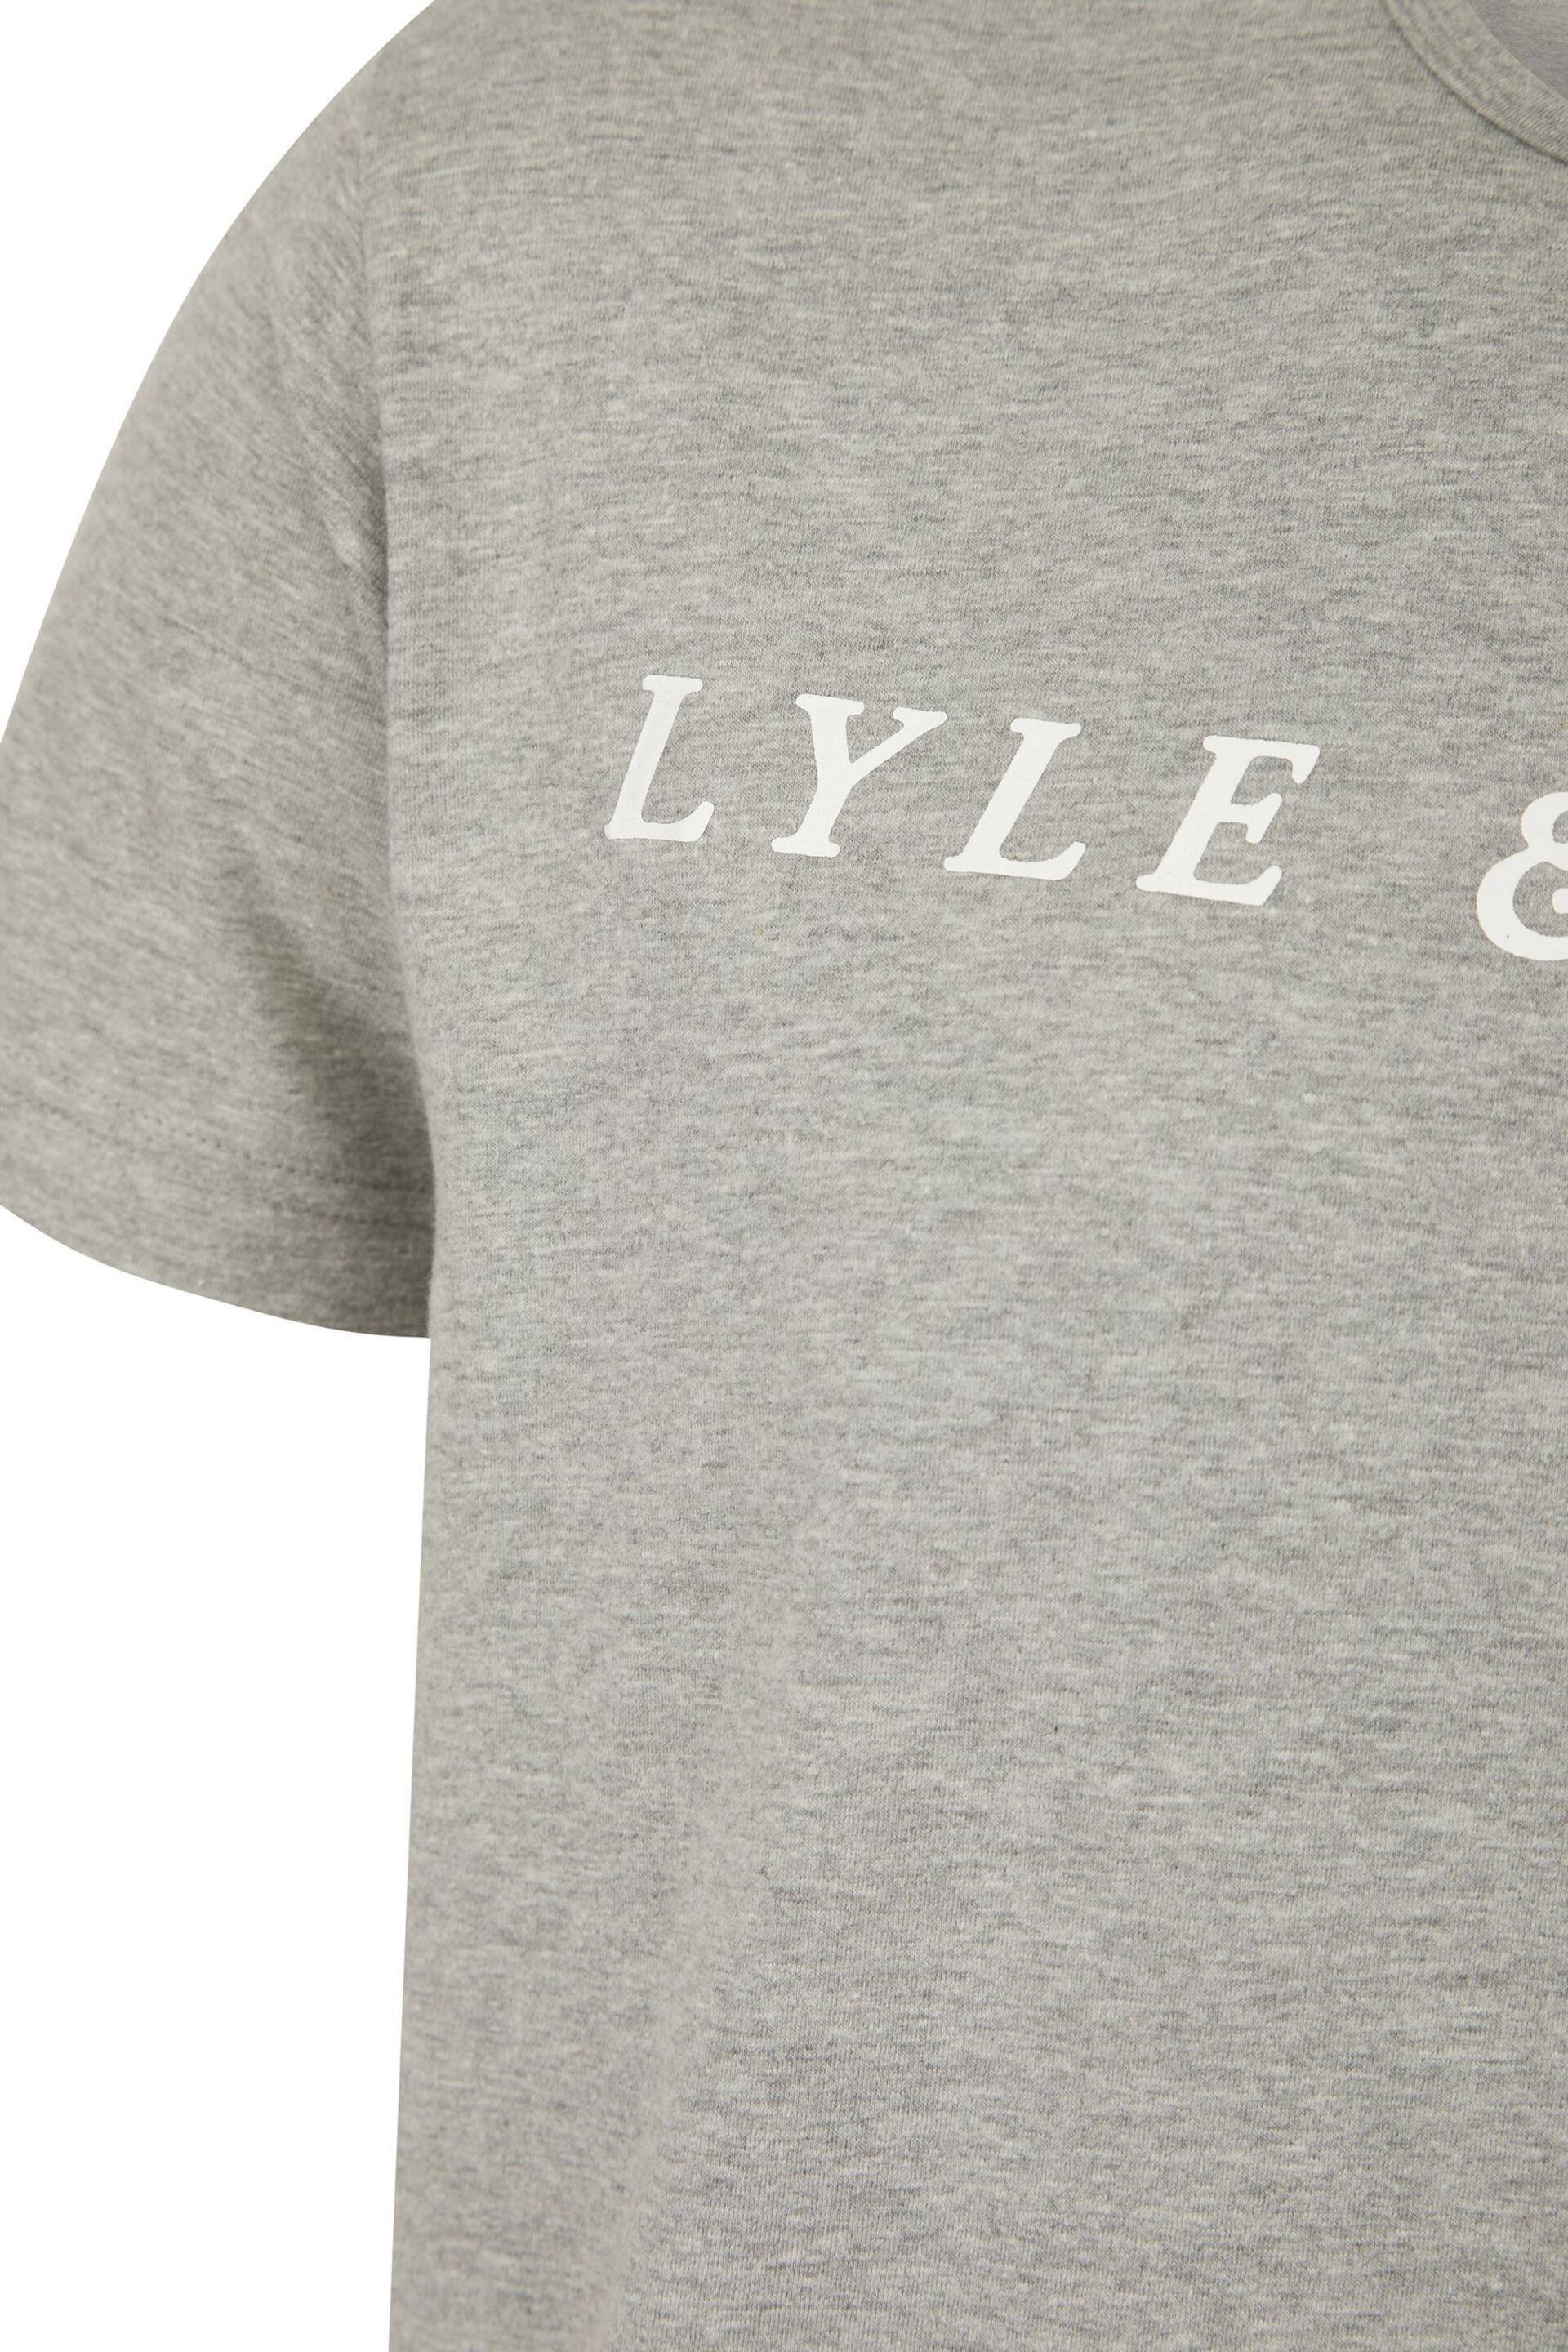 Lyle & Scott Oakley Loungewear Set - Image 3 of 6